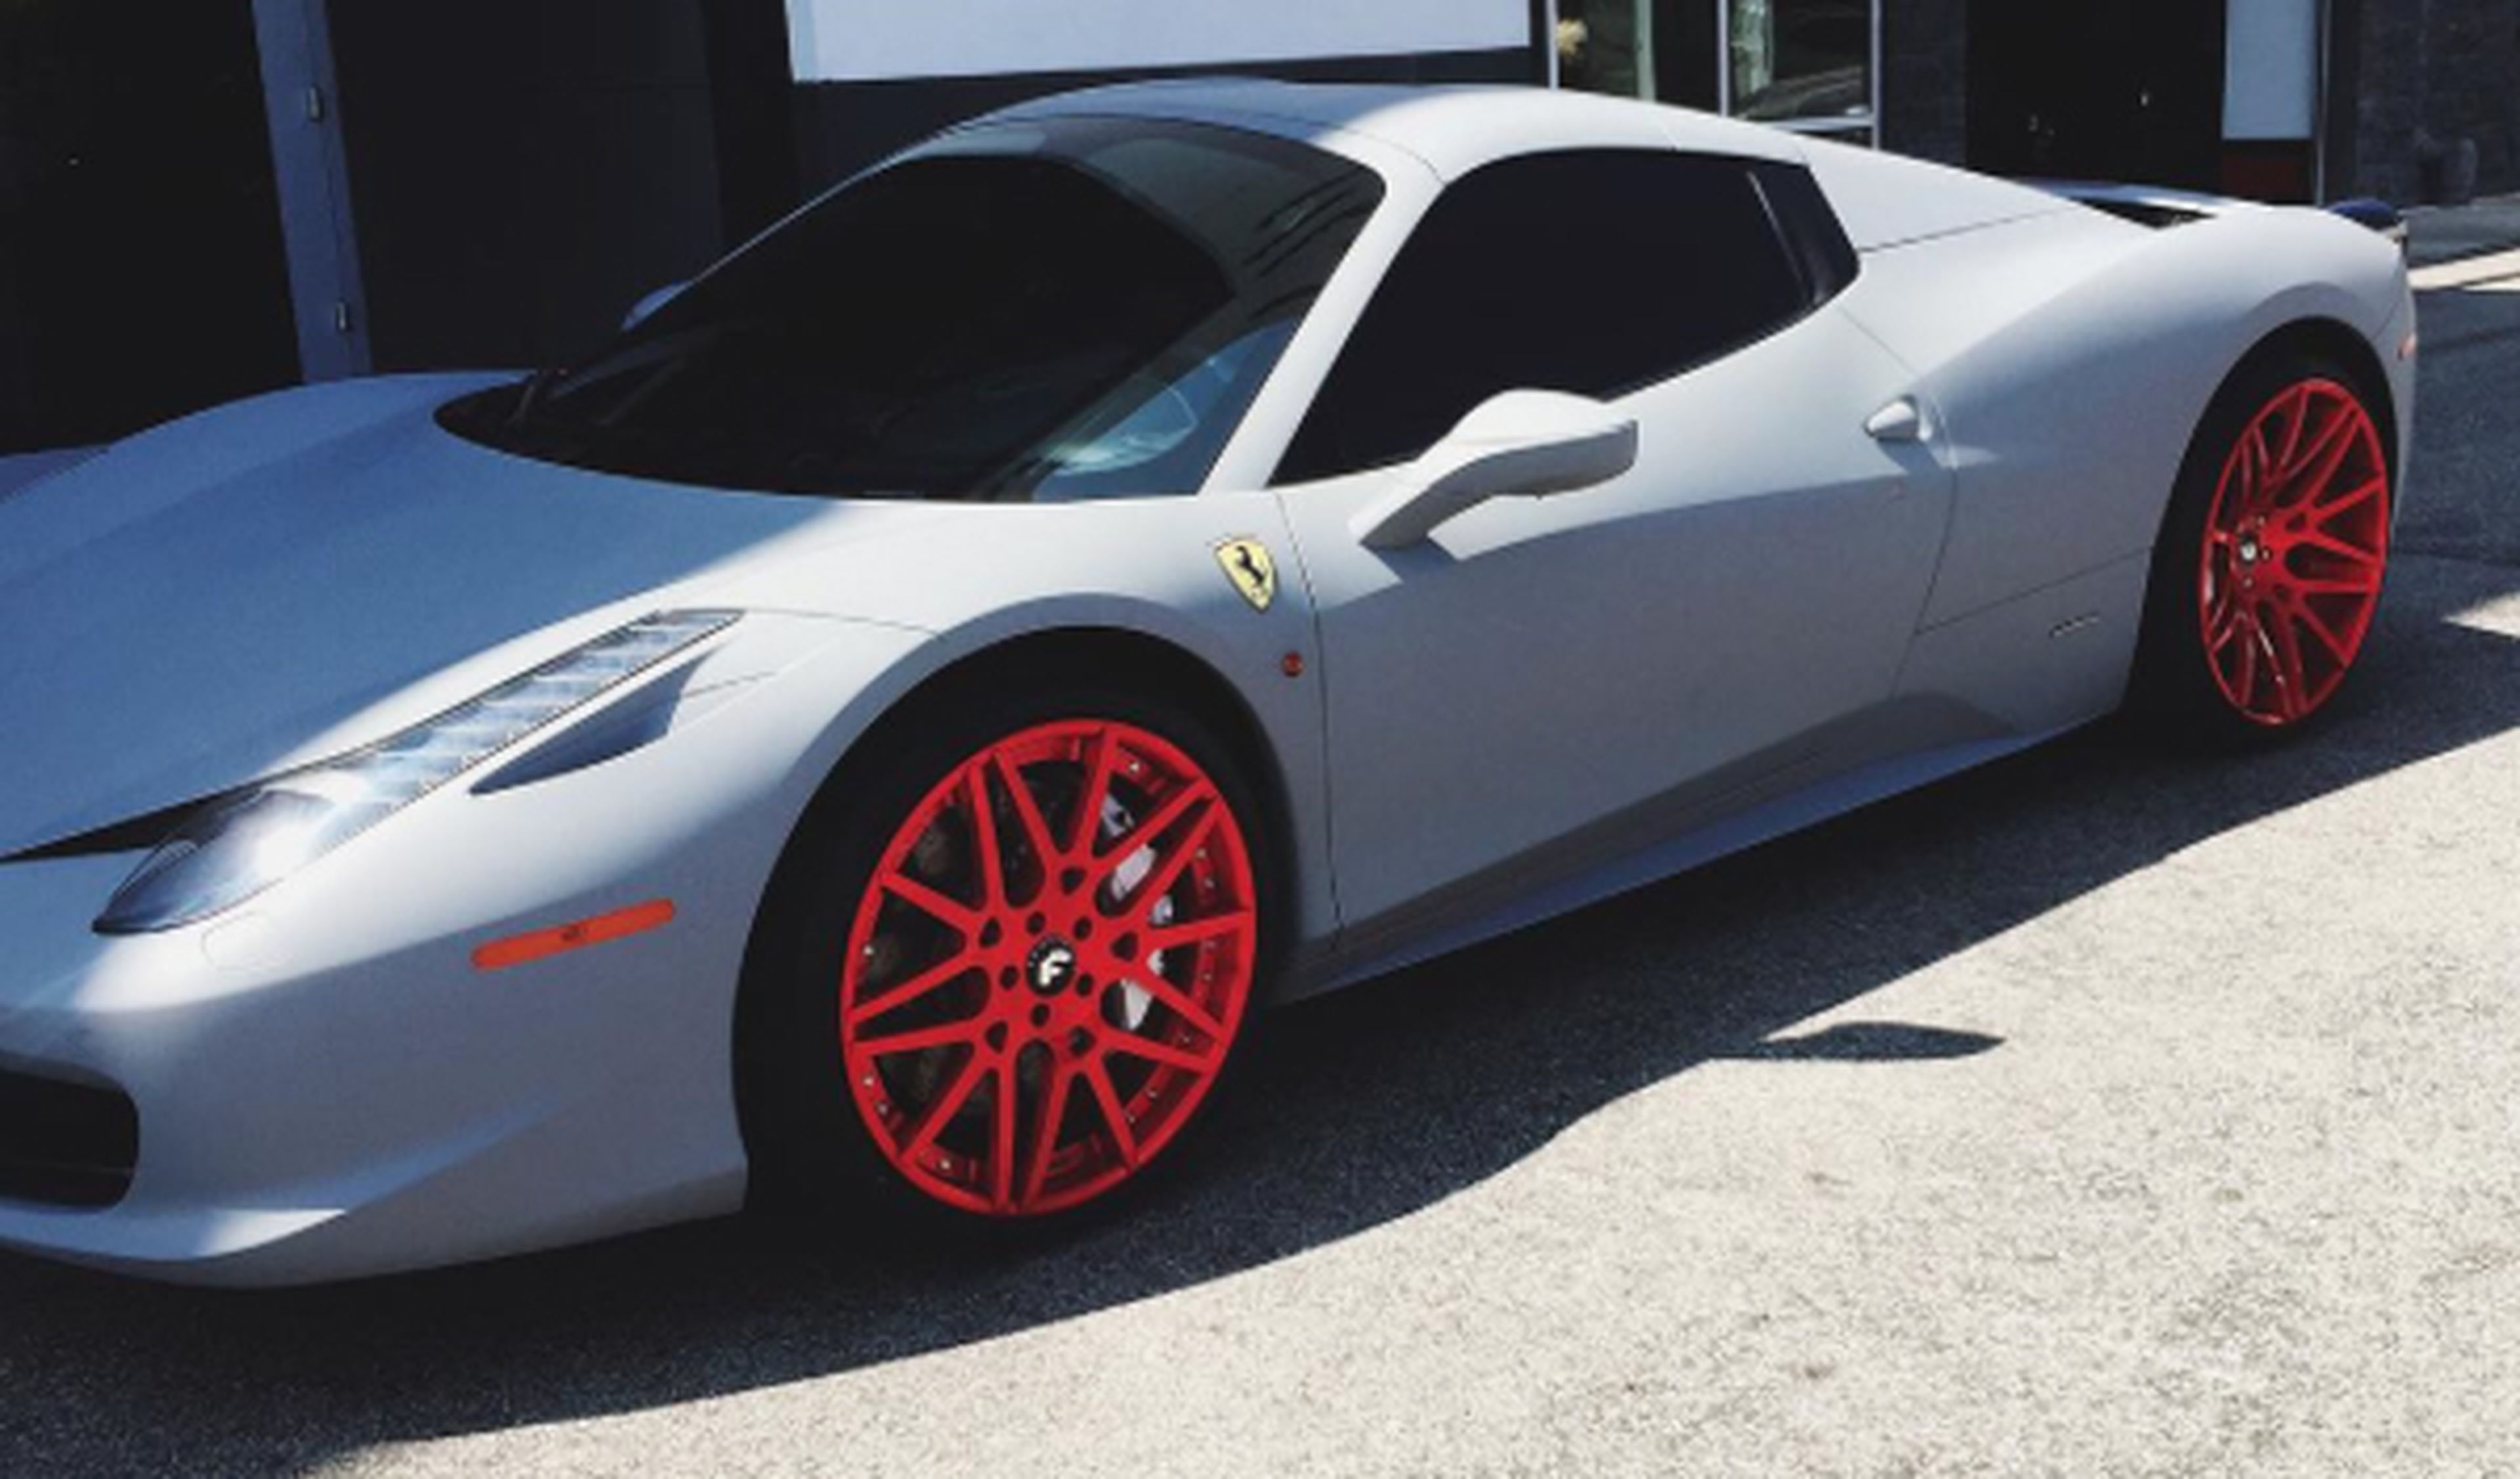 Kylie Jenner ‘tunea’ su Ferrari 458 Spider